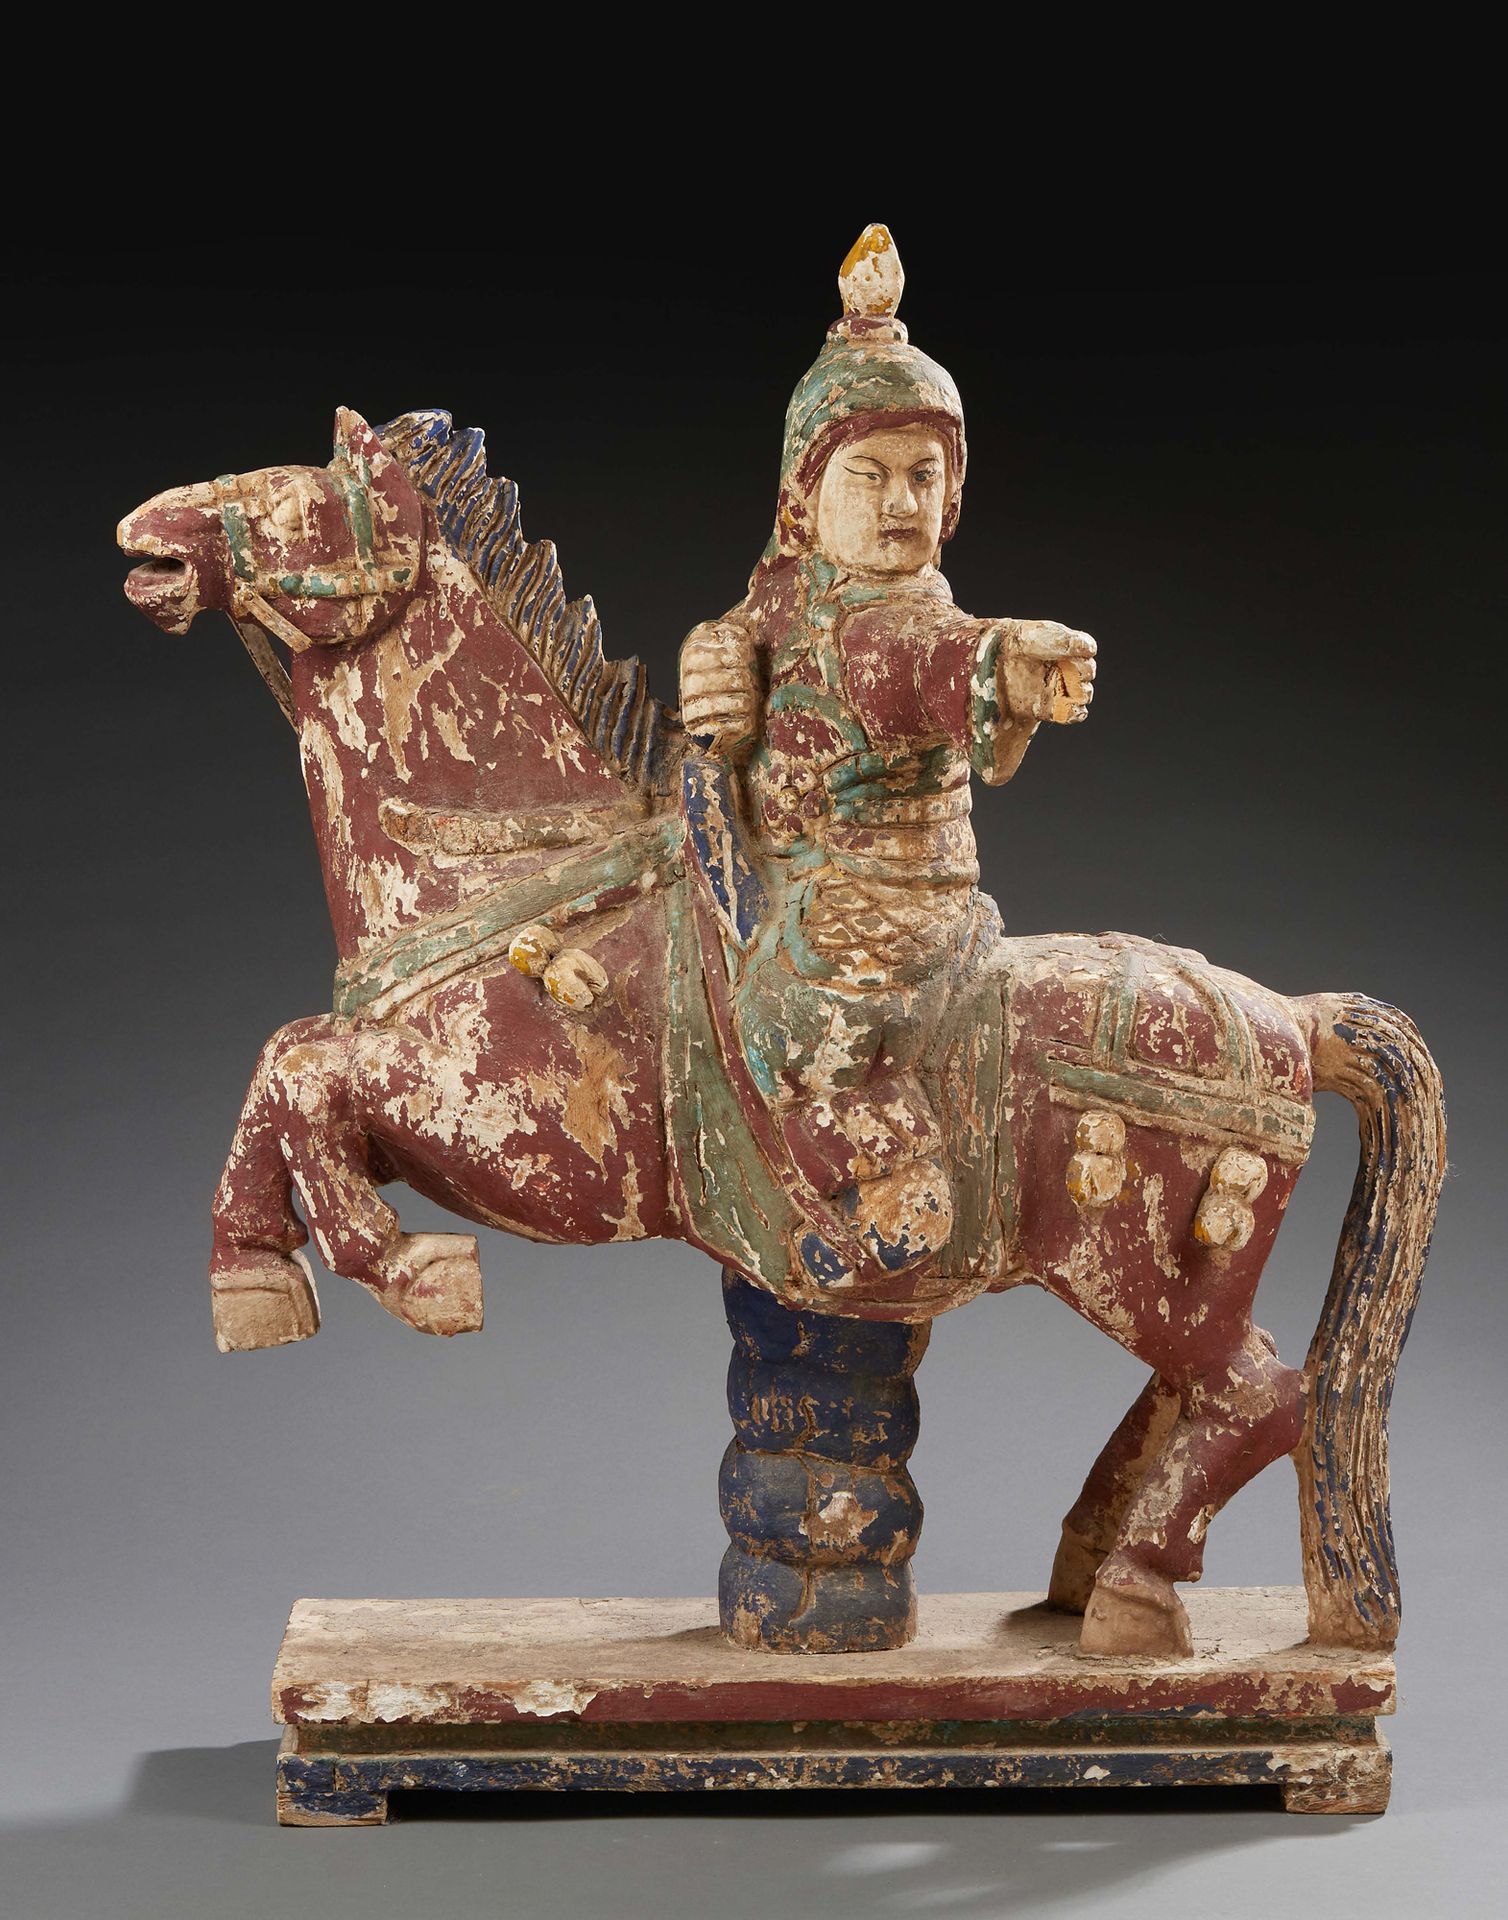 CHINE Importante escultura de madera policromada de un guerrero a caballo.
Estil&hellip;